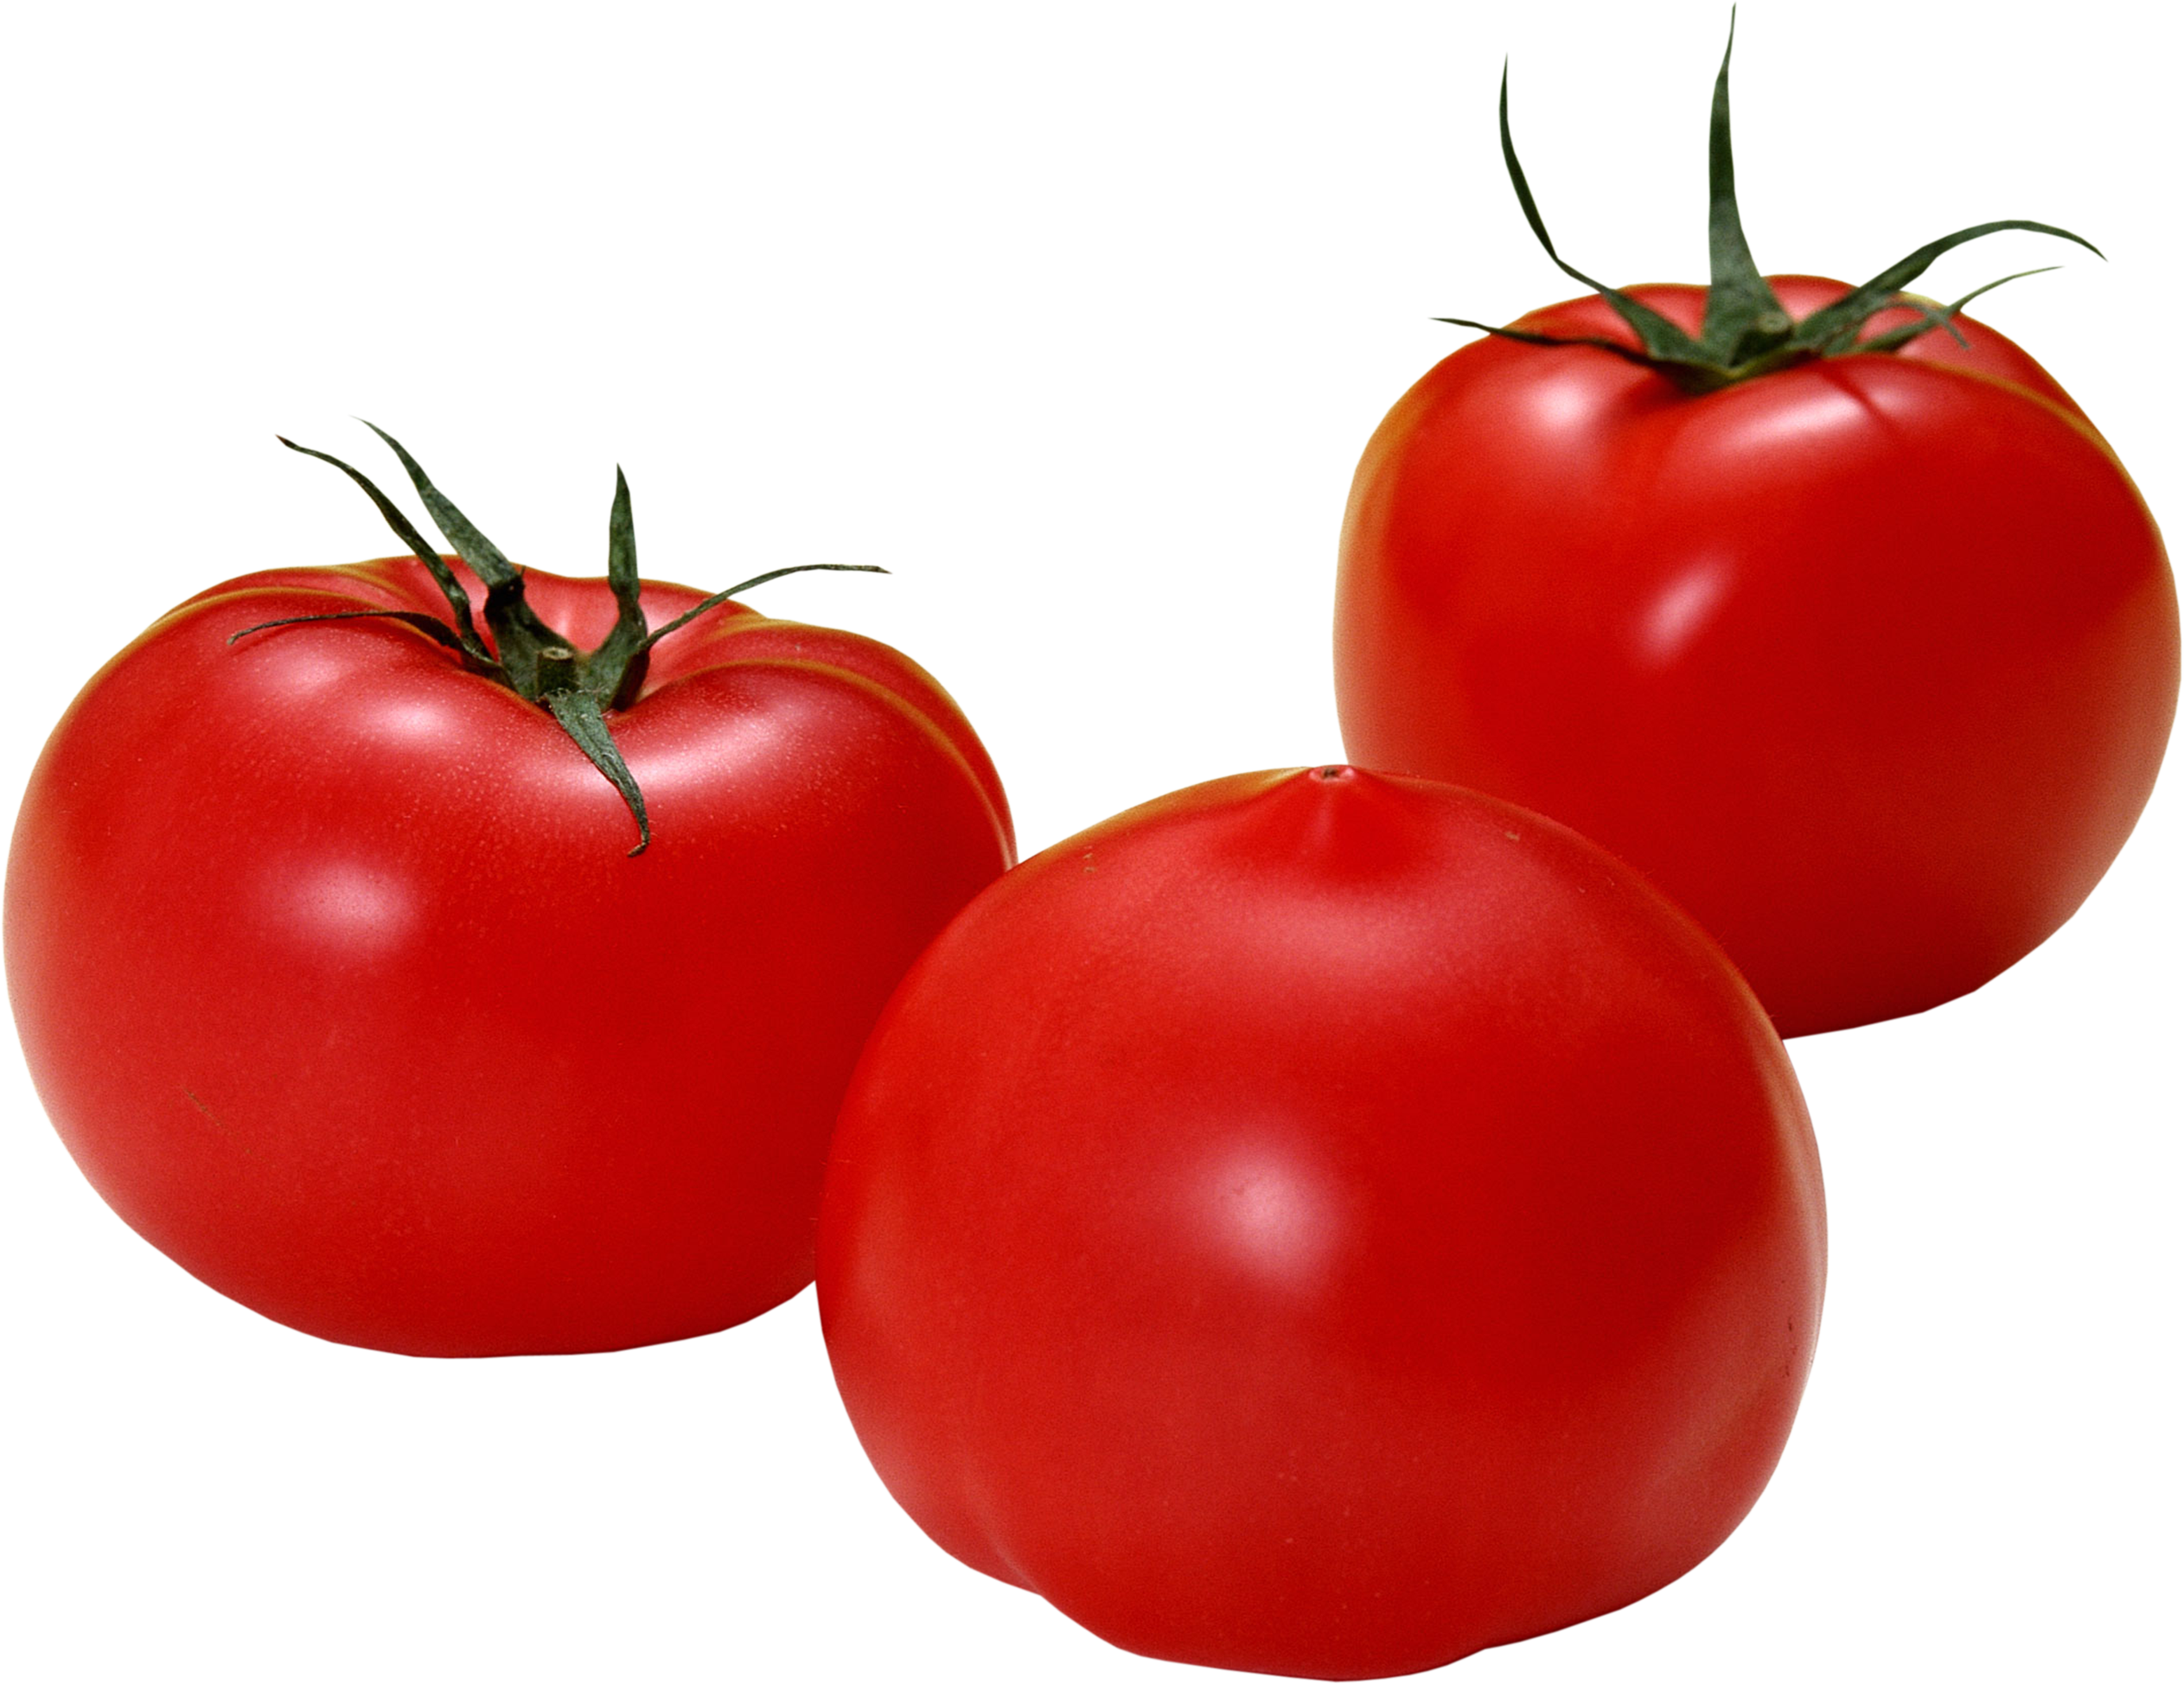 빨간 토마토 3개